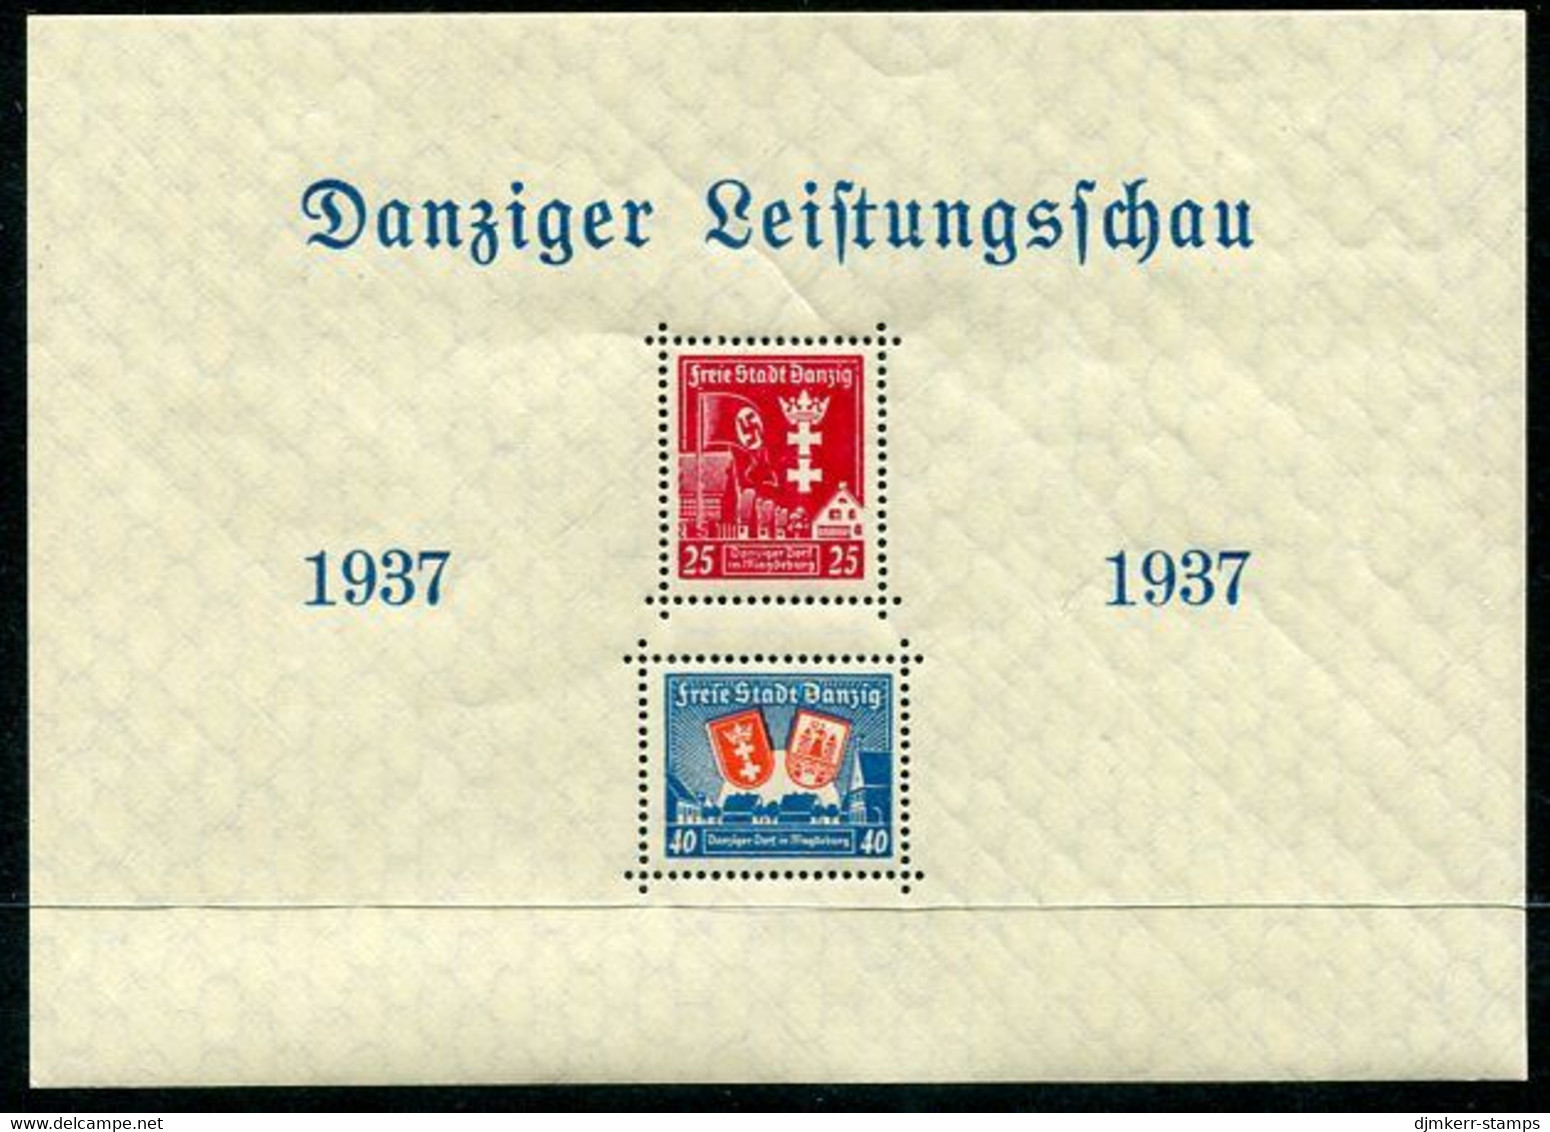 DANZIG 1937 Danzig Exhibition In Magdeburg Block. MNH / **.  Michel Block 3 - Postfris